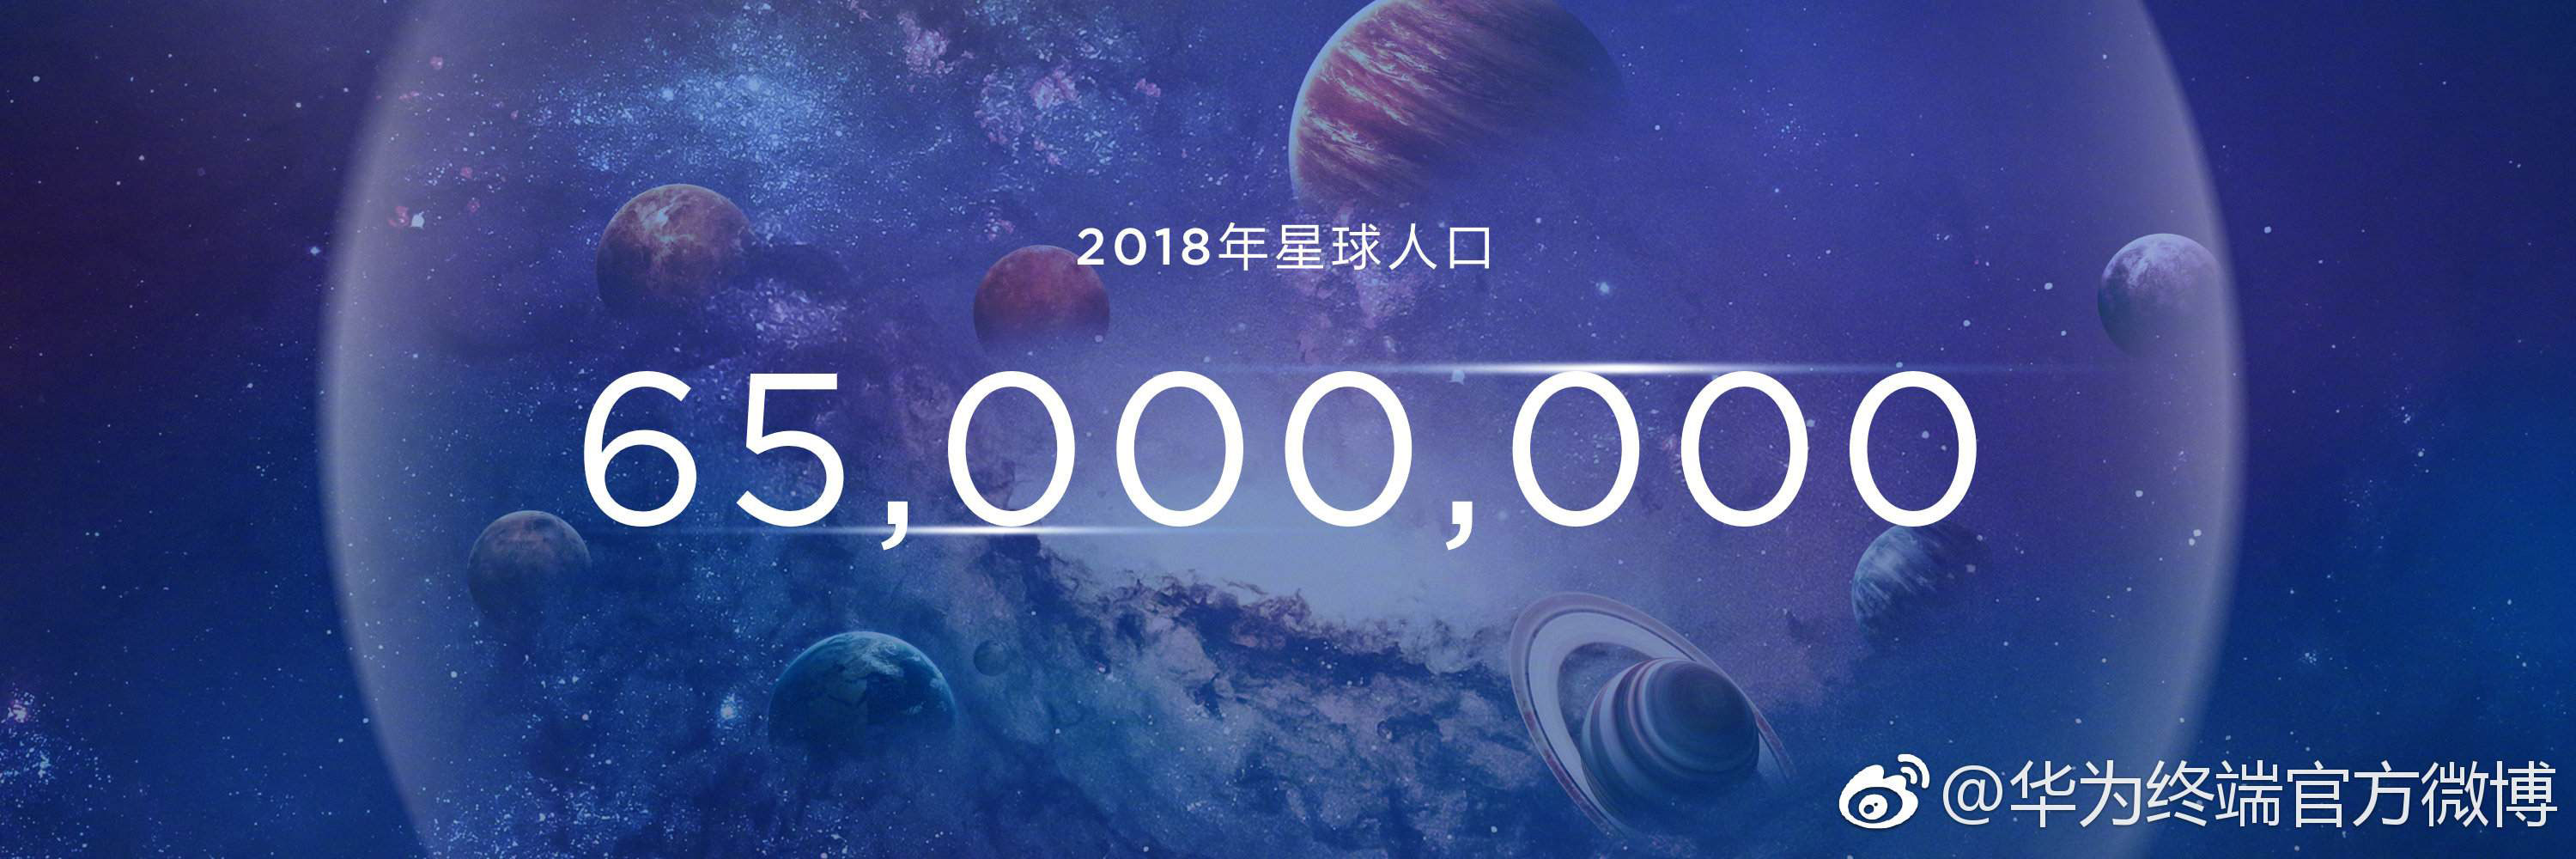 فروش ۶۵ میلیون گوشی هوشمند «نوا» توسط هوآوی